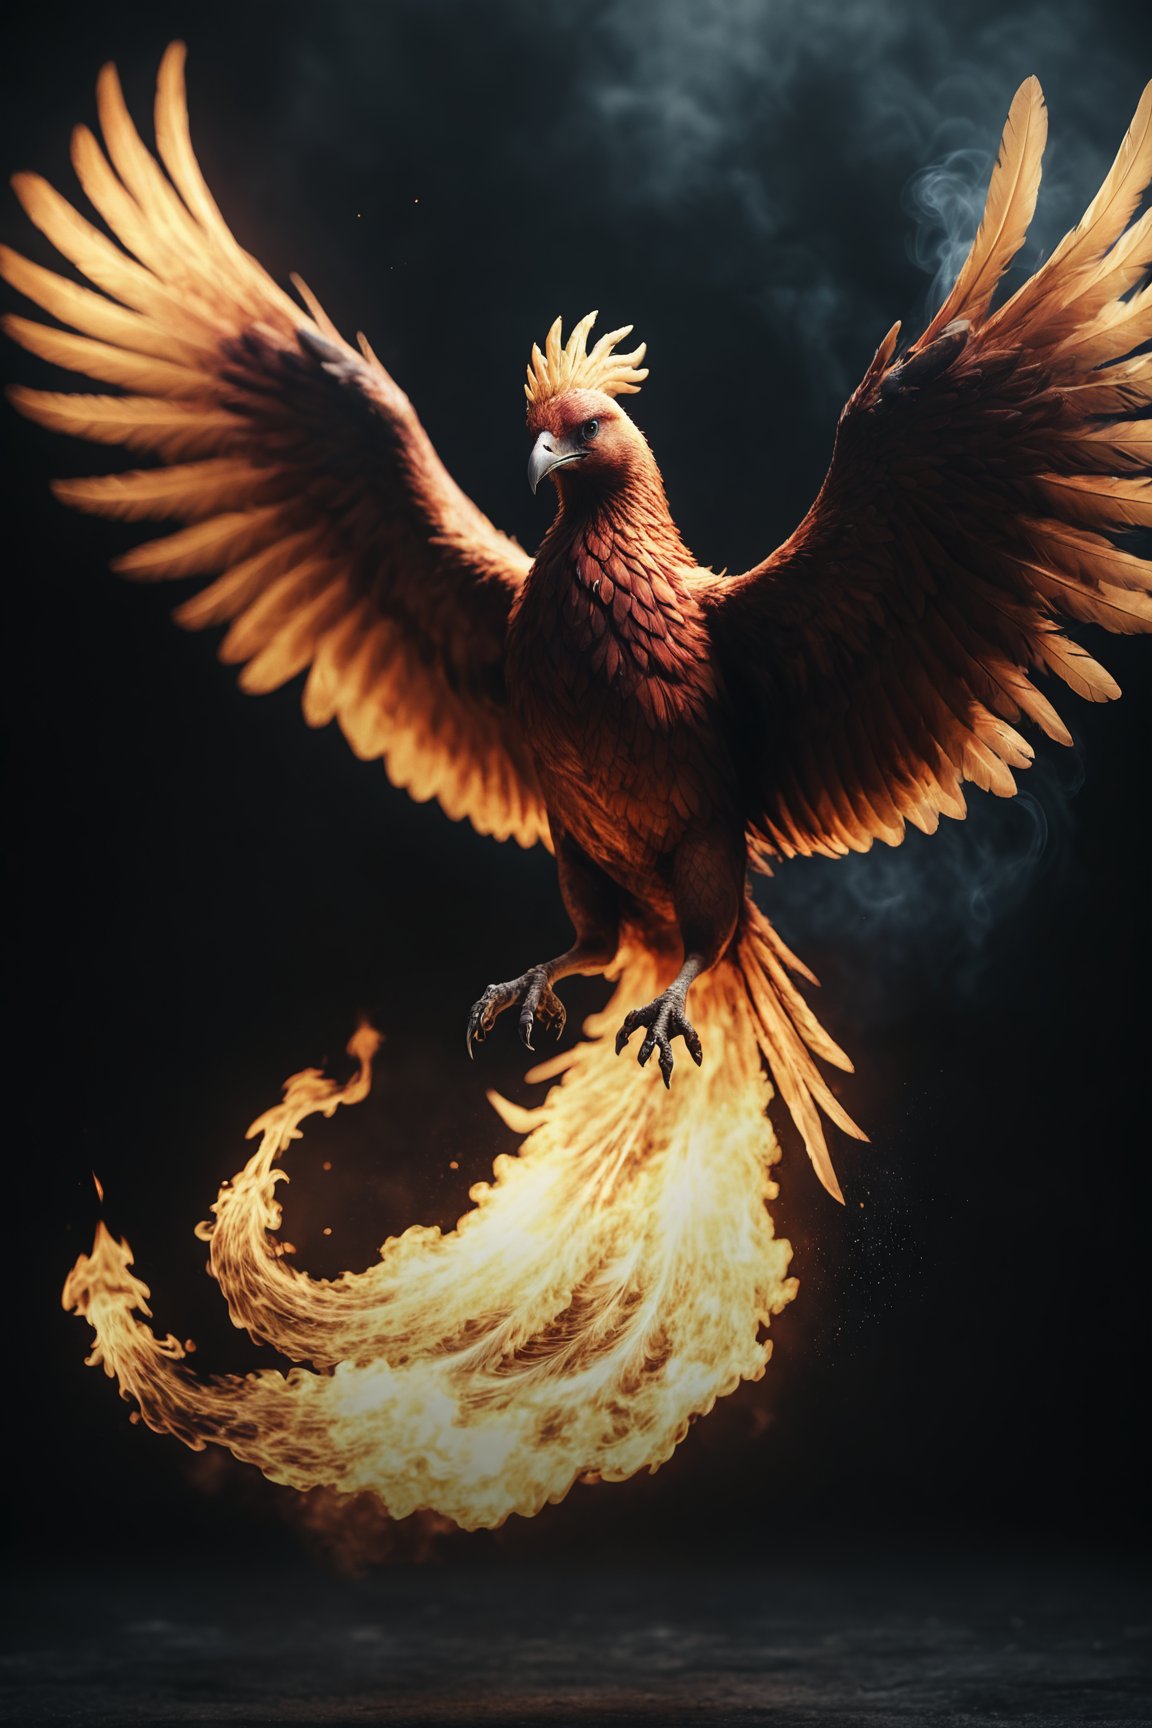 photo, a burning phoenix, flying burning feathers, epic, dark atmosphere, cinematic